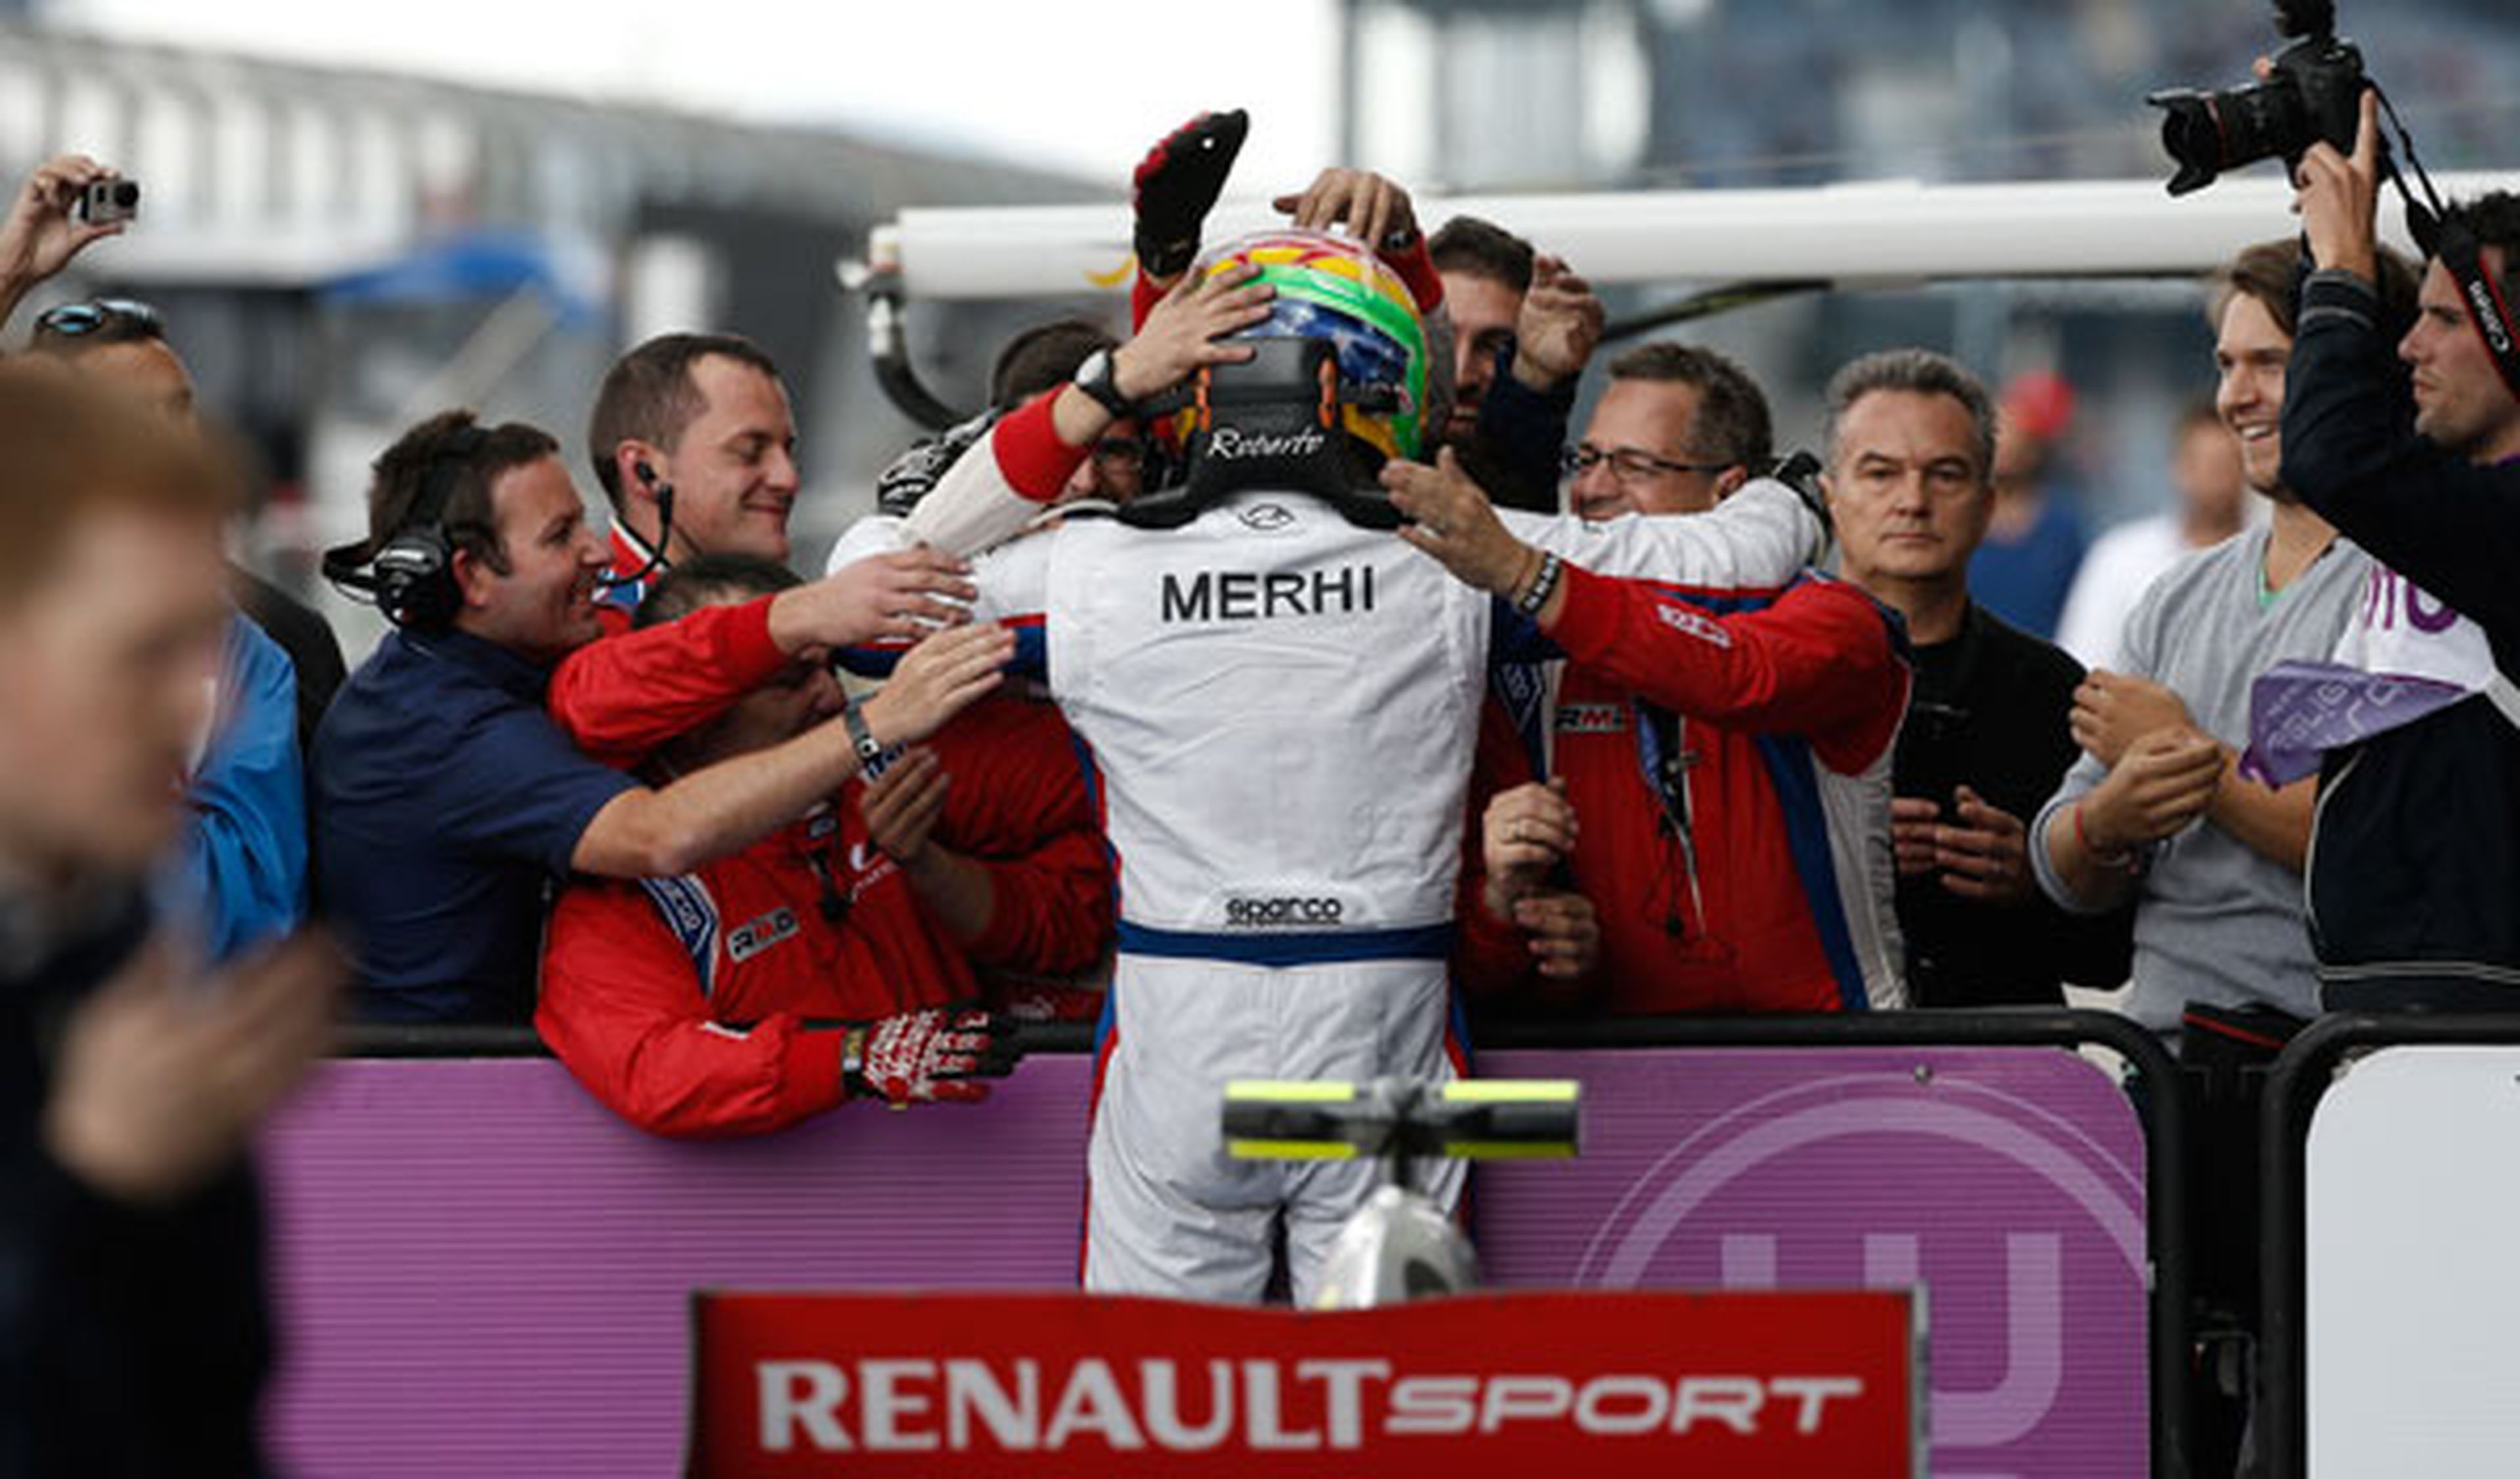 Roberto Merhi consigue la victoria en las WSR en Nürburgring